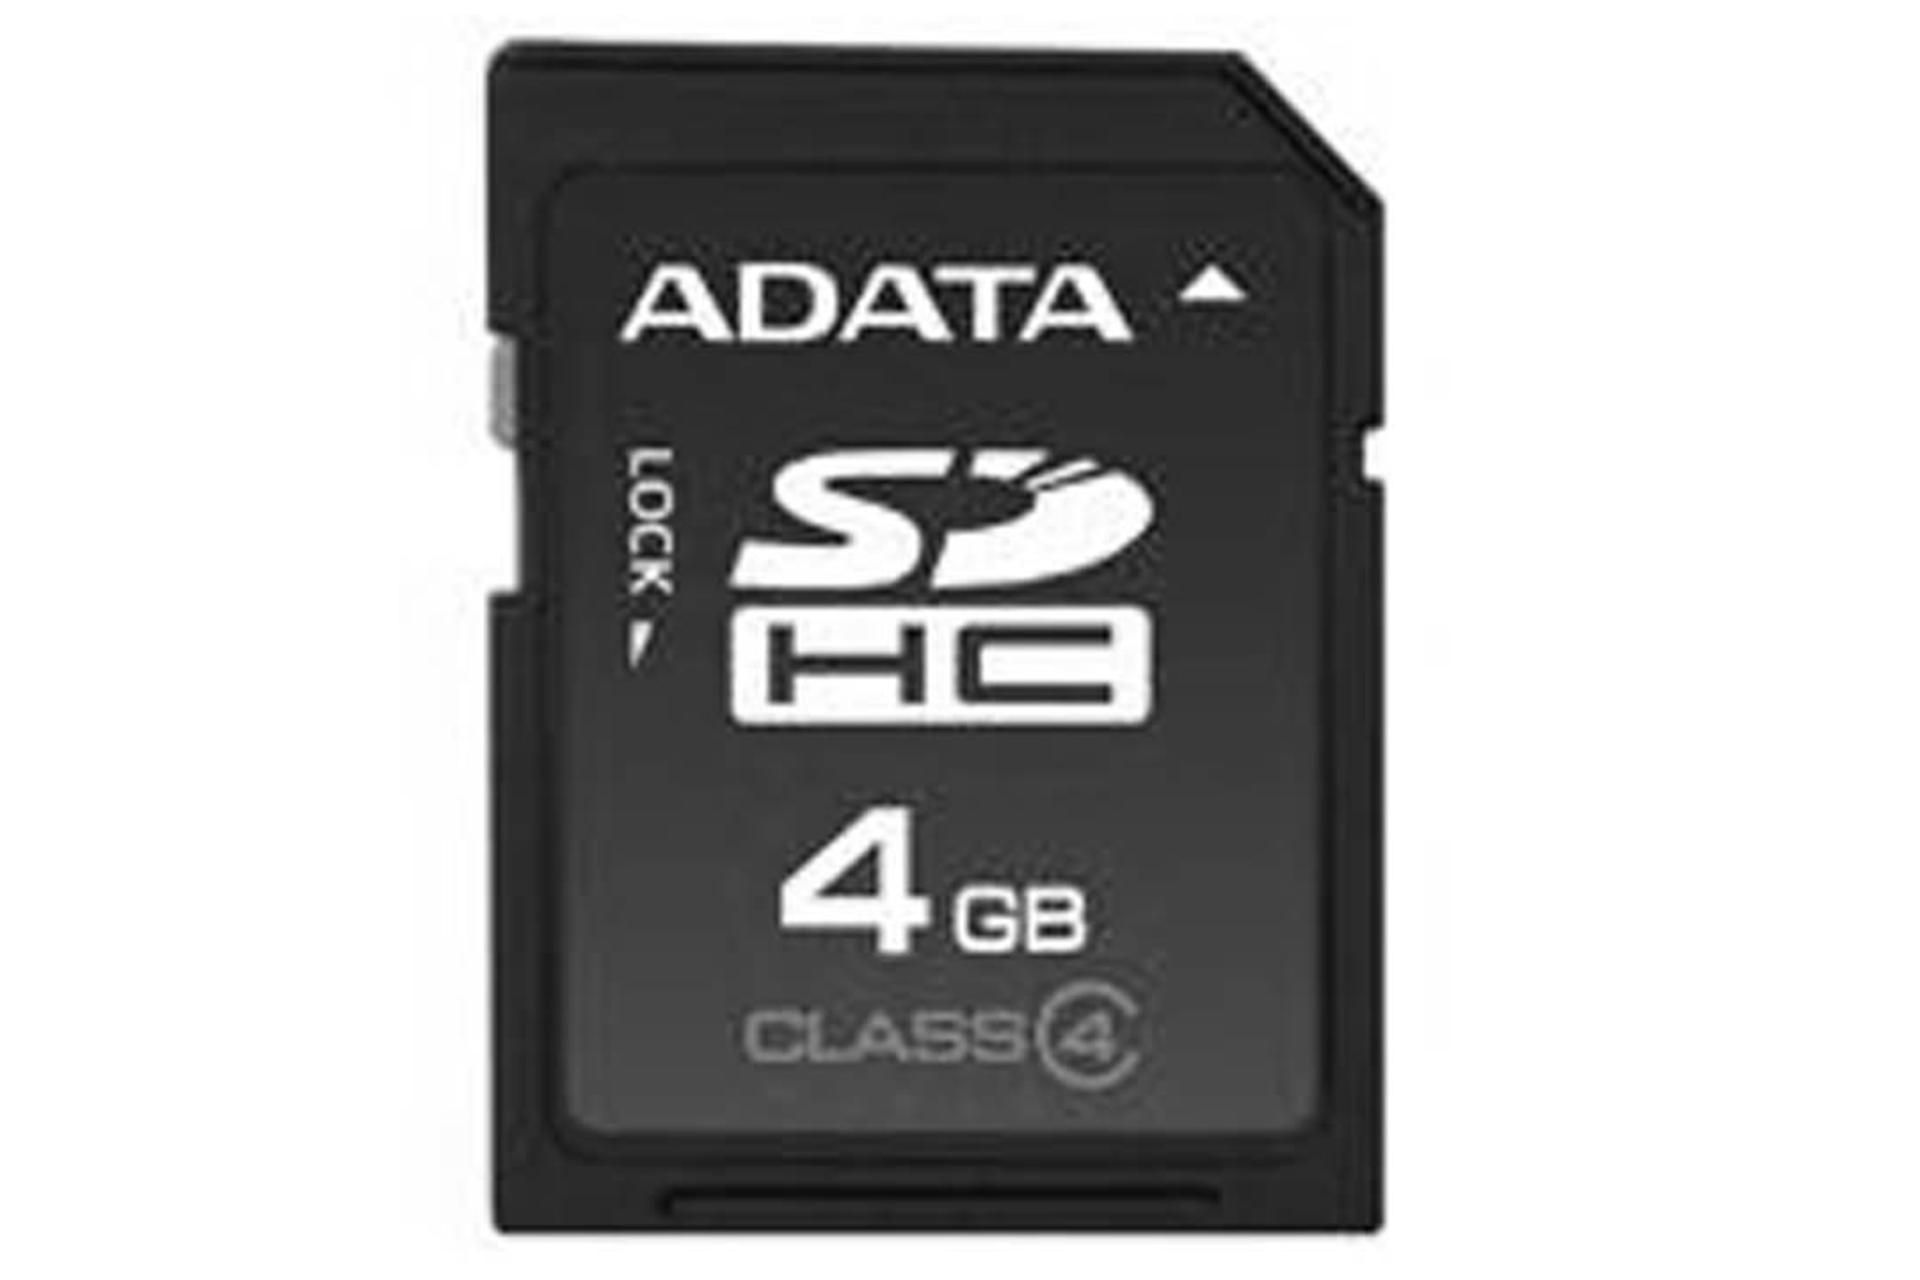 مرجع متخصصين ايران ADATA SDHC Class 4 4GB